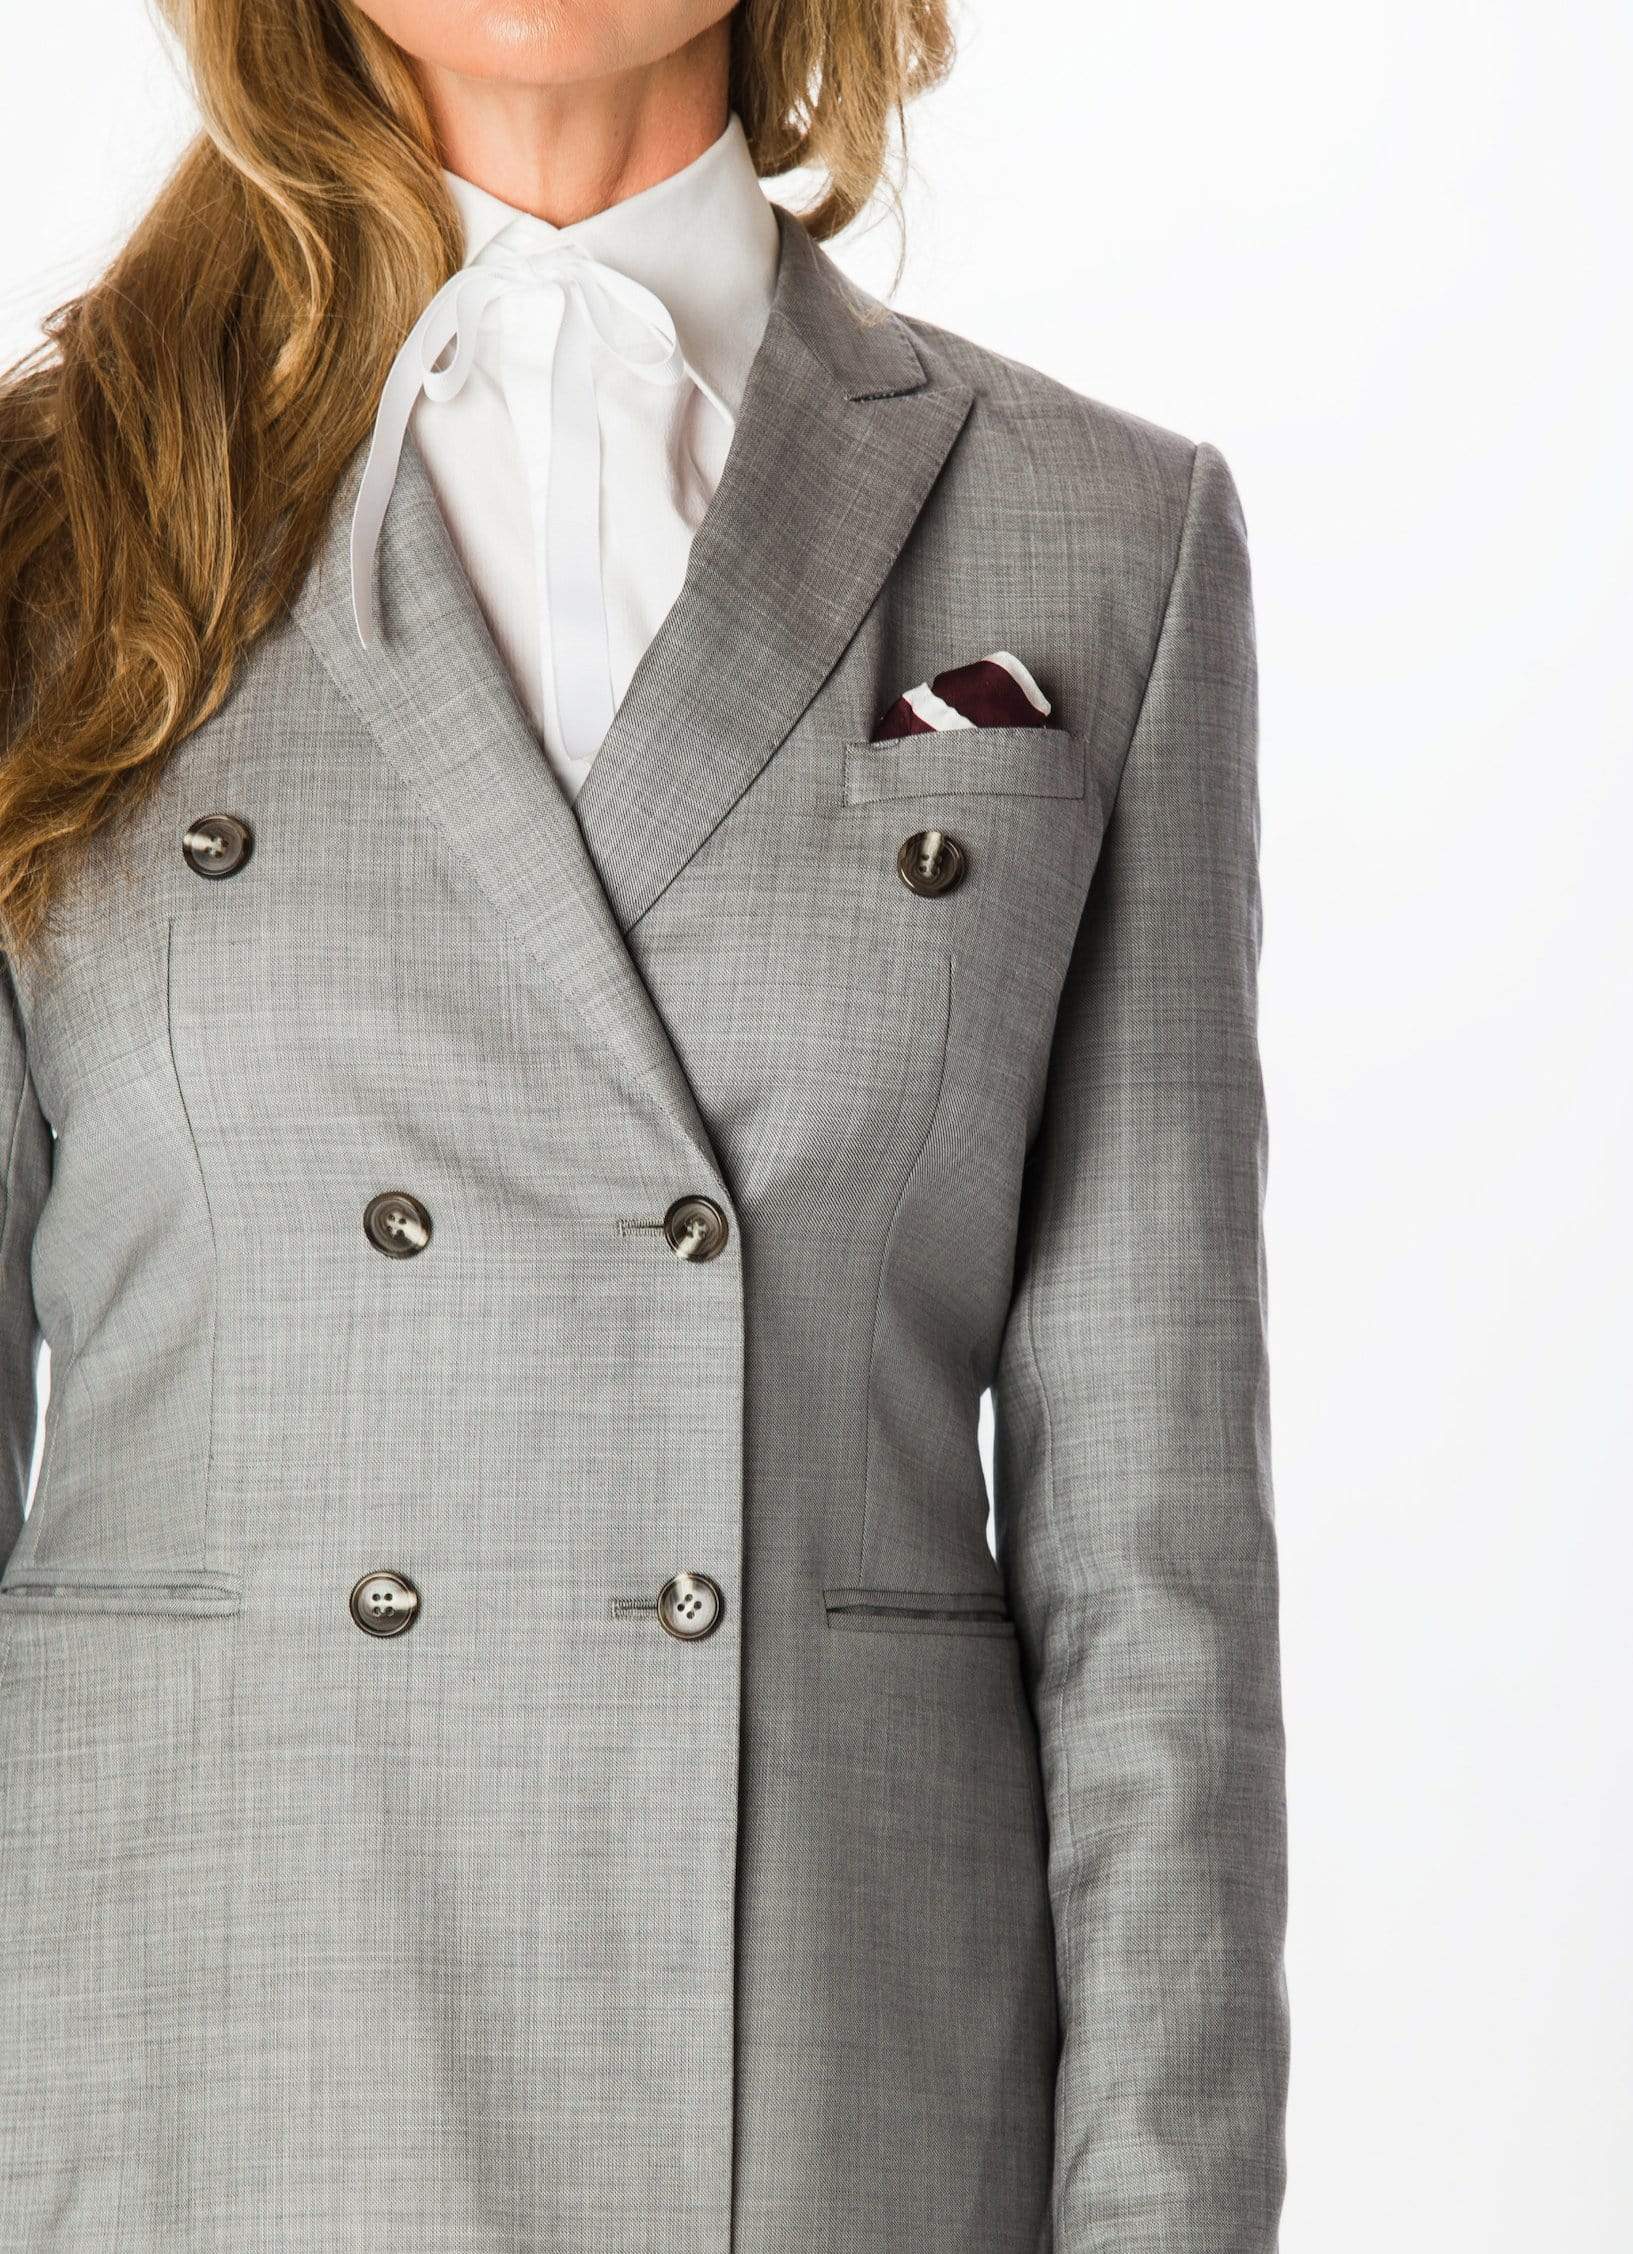 2 Piece Grey Women's Suit – Size 14/16, in Norwich, Norfolk